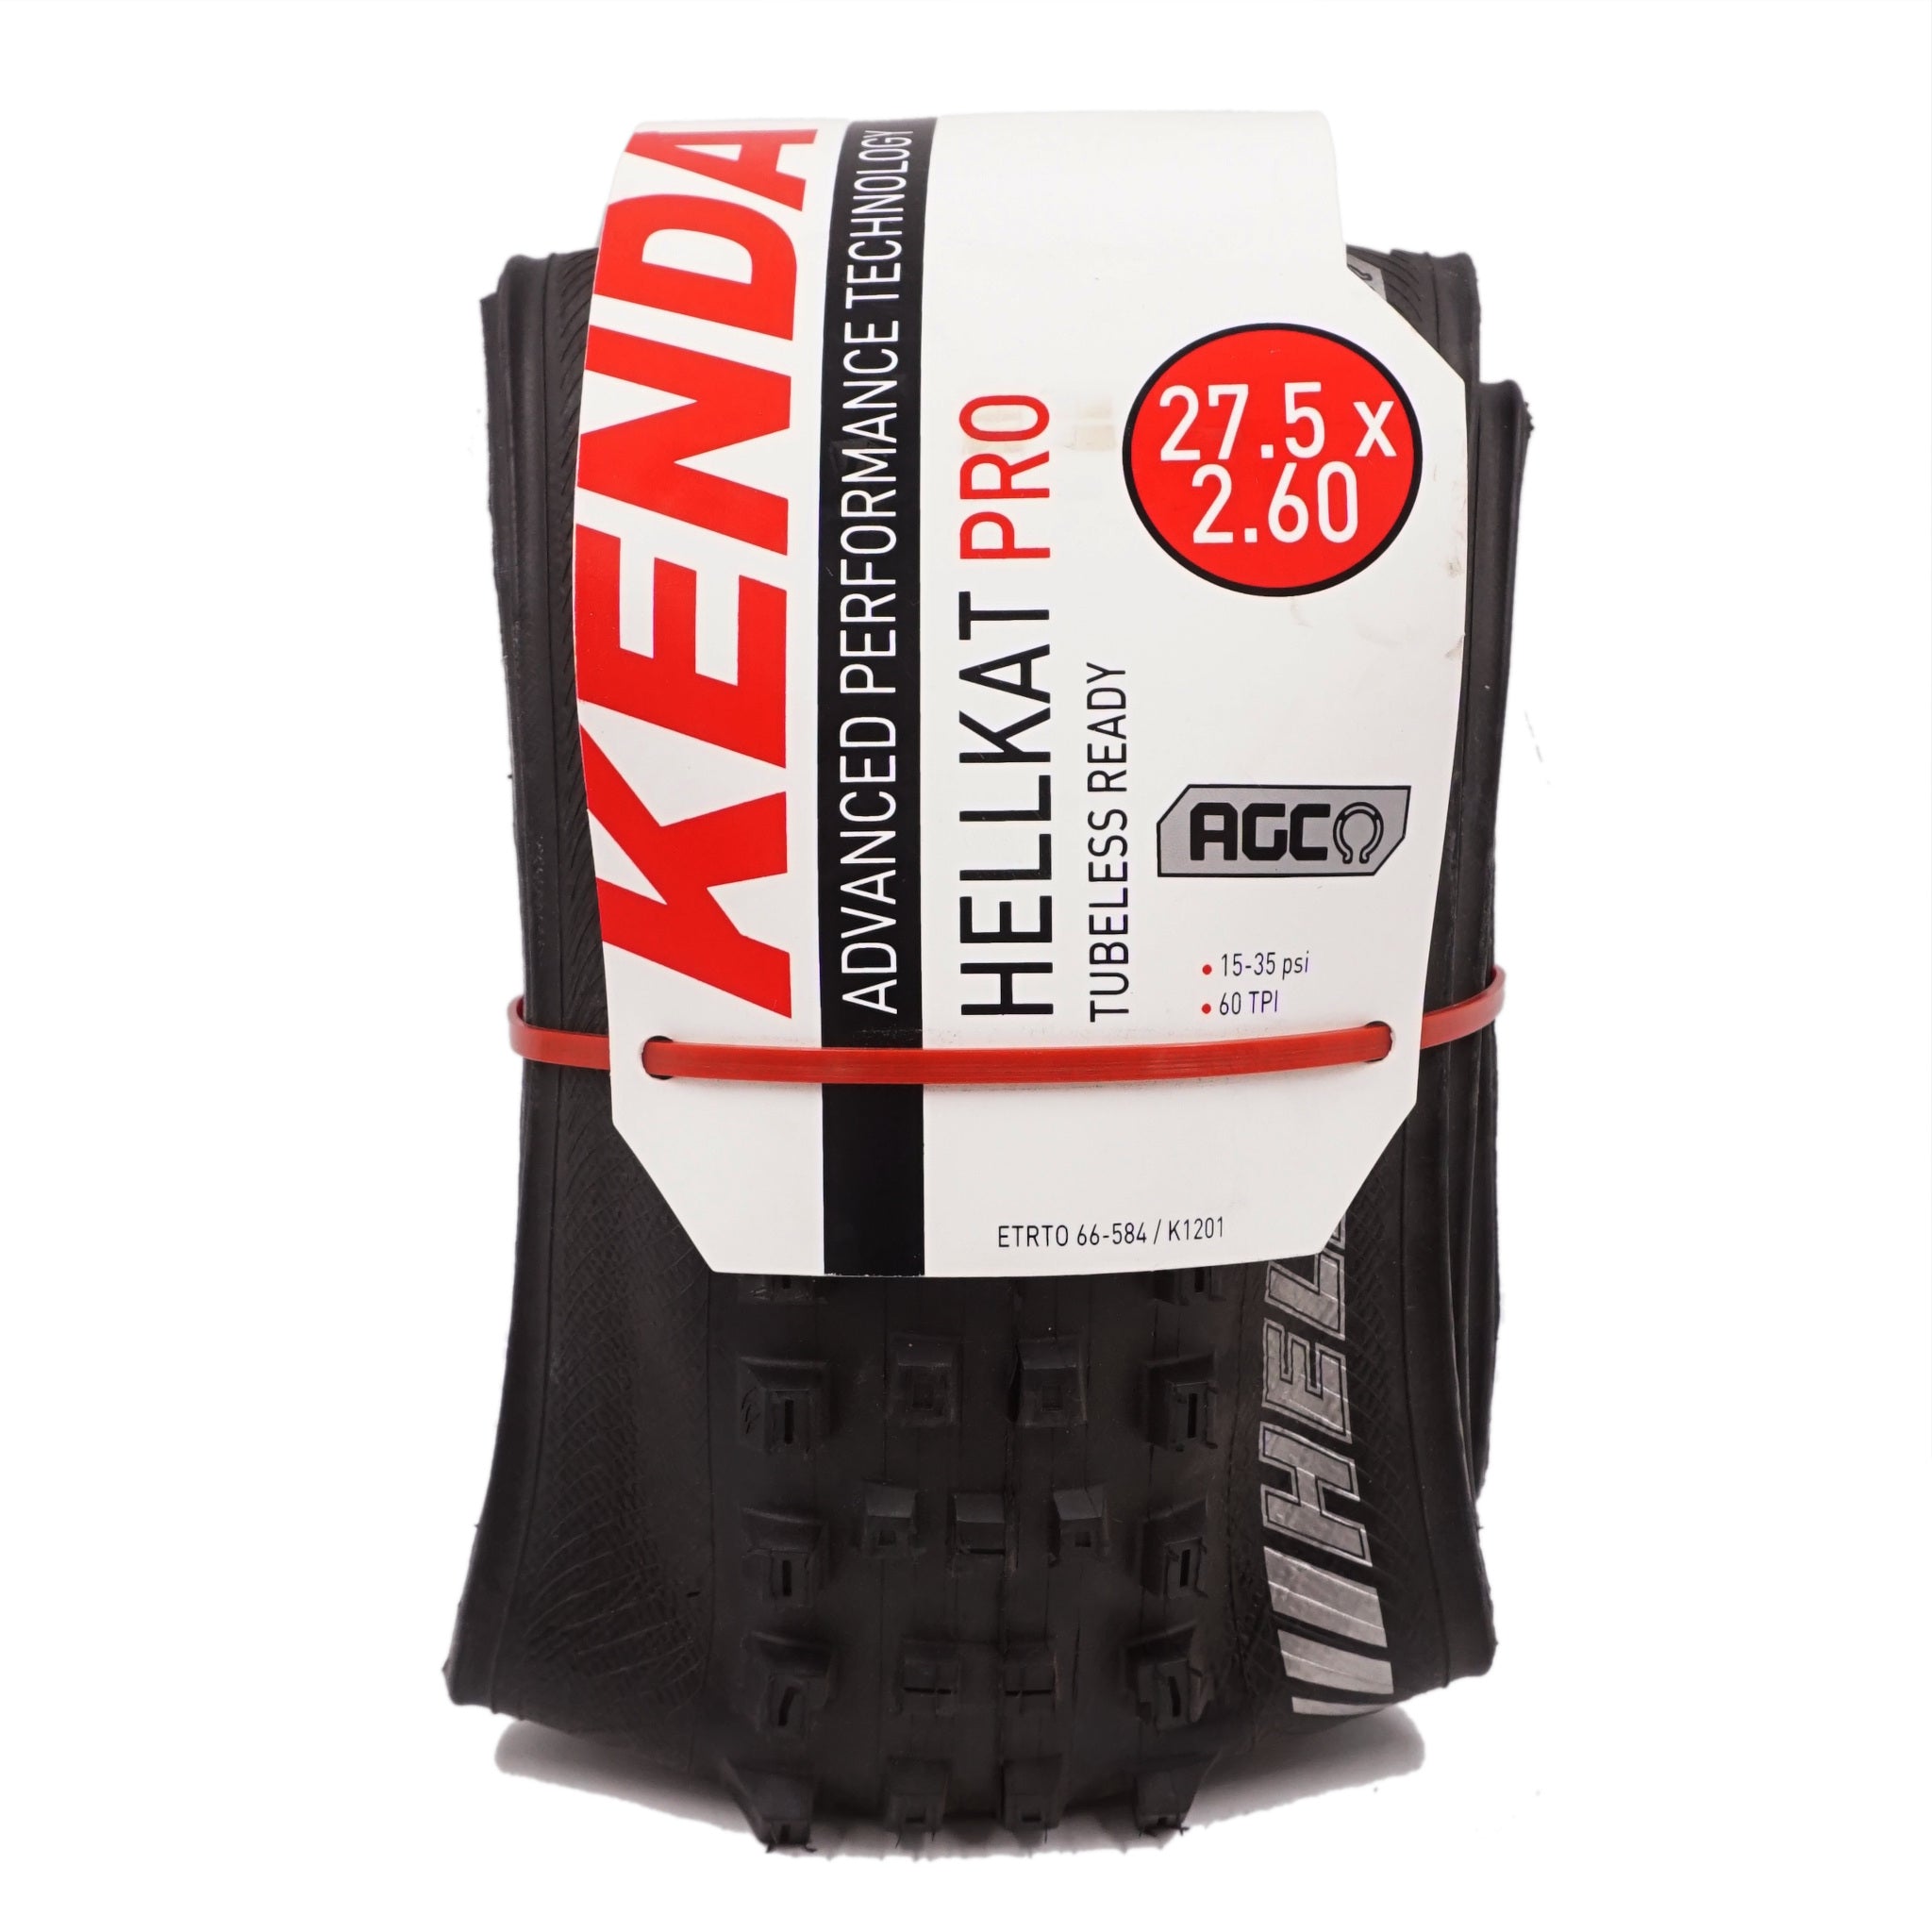 Kenda K1201 Hellkat Pro 27.5x2.6 Tire AGC TPI: 60